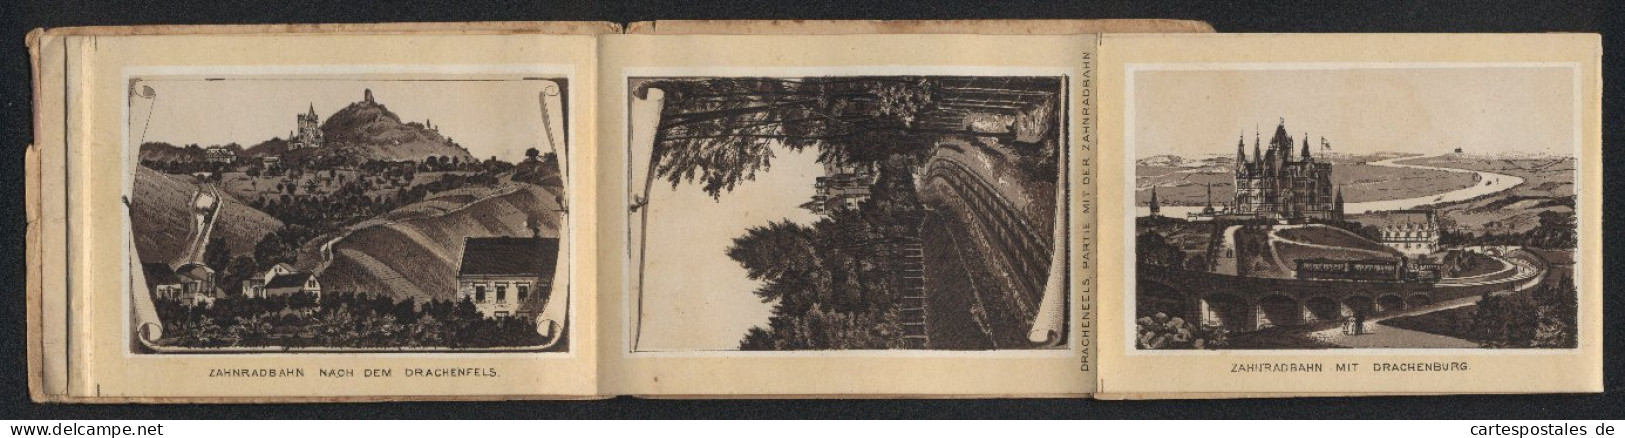 Leporello-Album Drachenfels Mit 12 Lithographie-Ansichten, Zahnradbahn Mit Drachenburg BahnhofRolandseck, Rolandsbogen  - Lithografieën